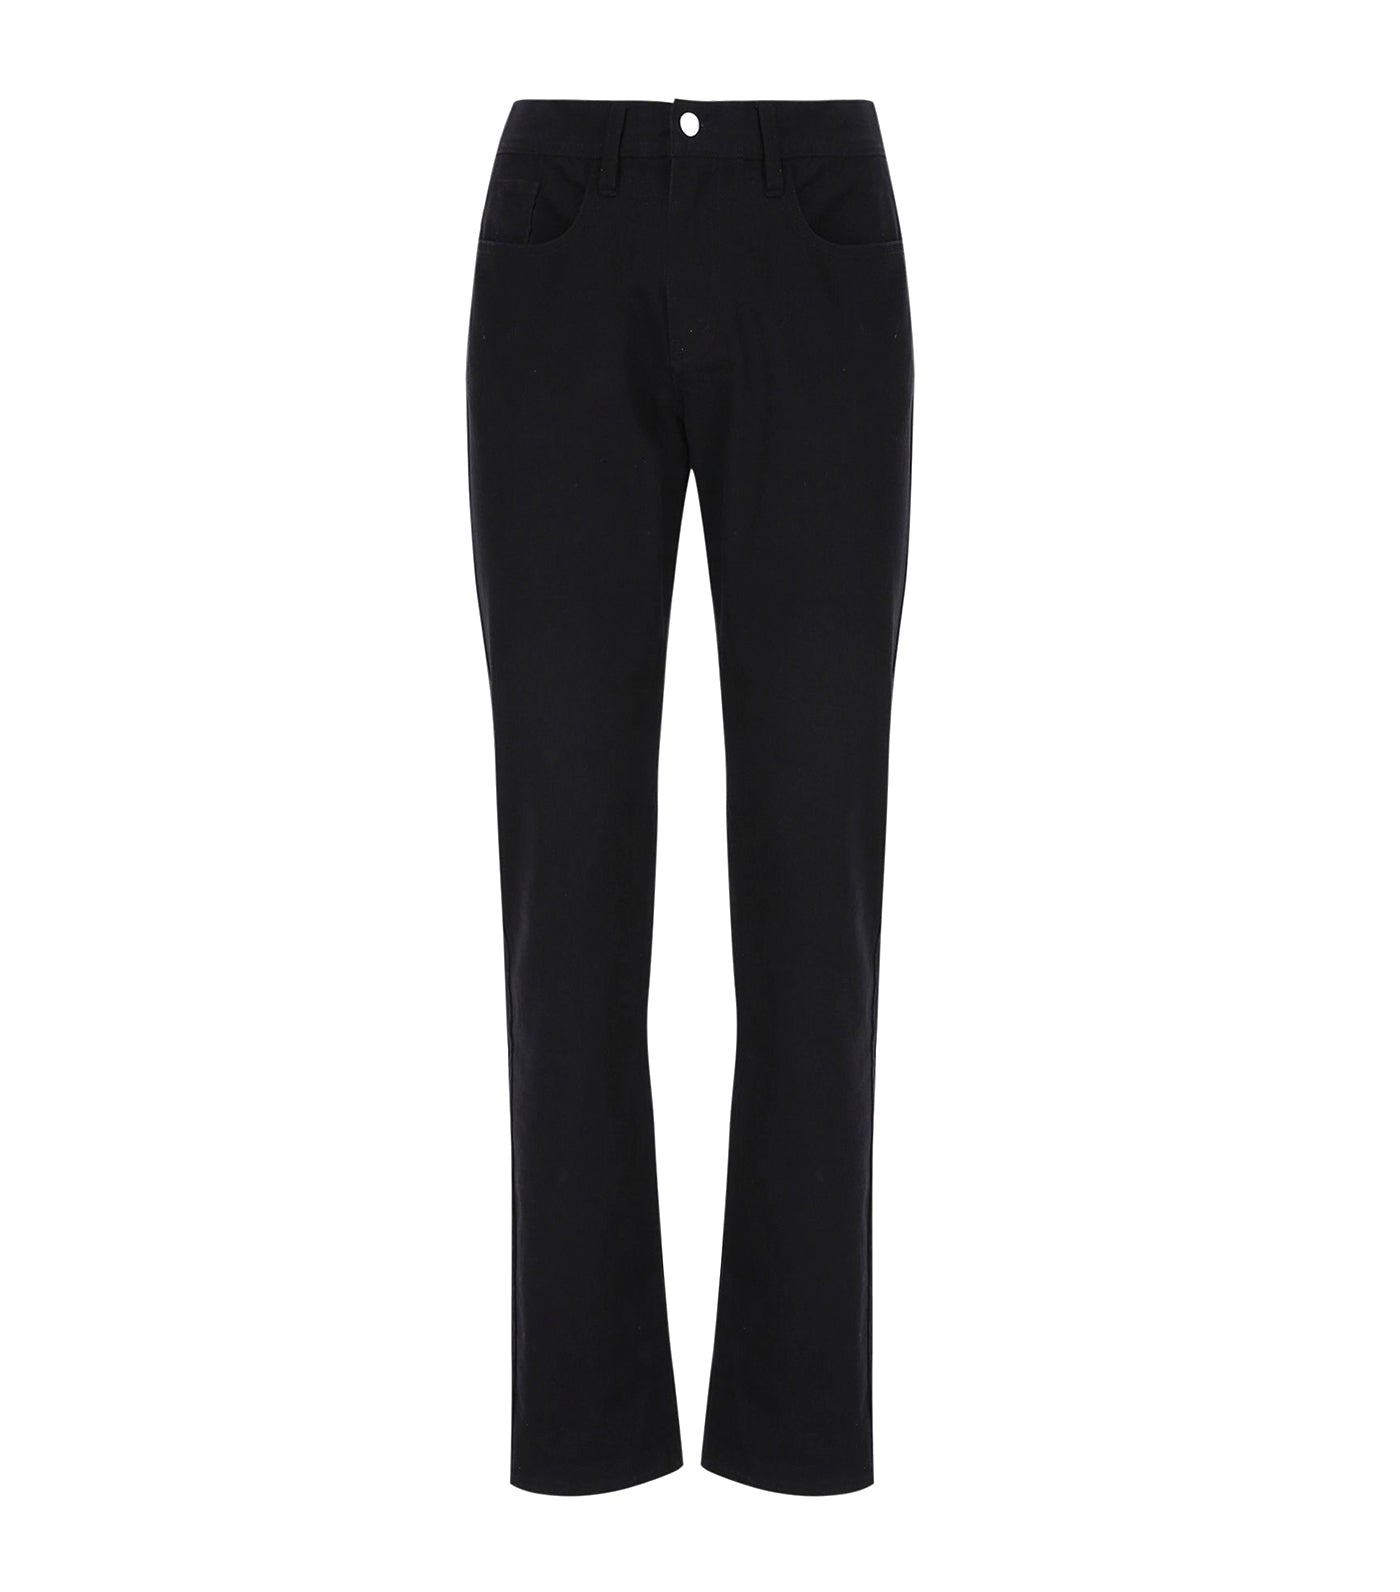 NWOT A/X Armani Exchange black pants, 6